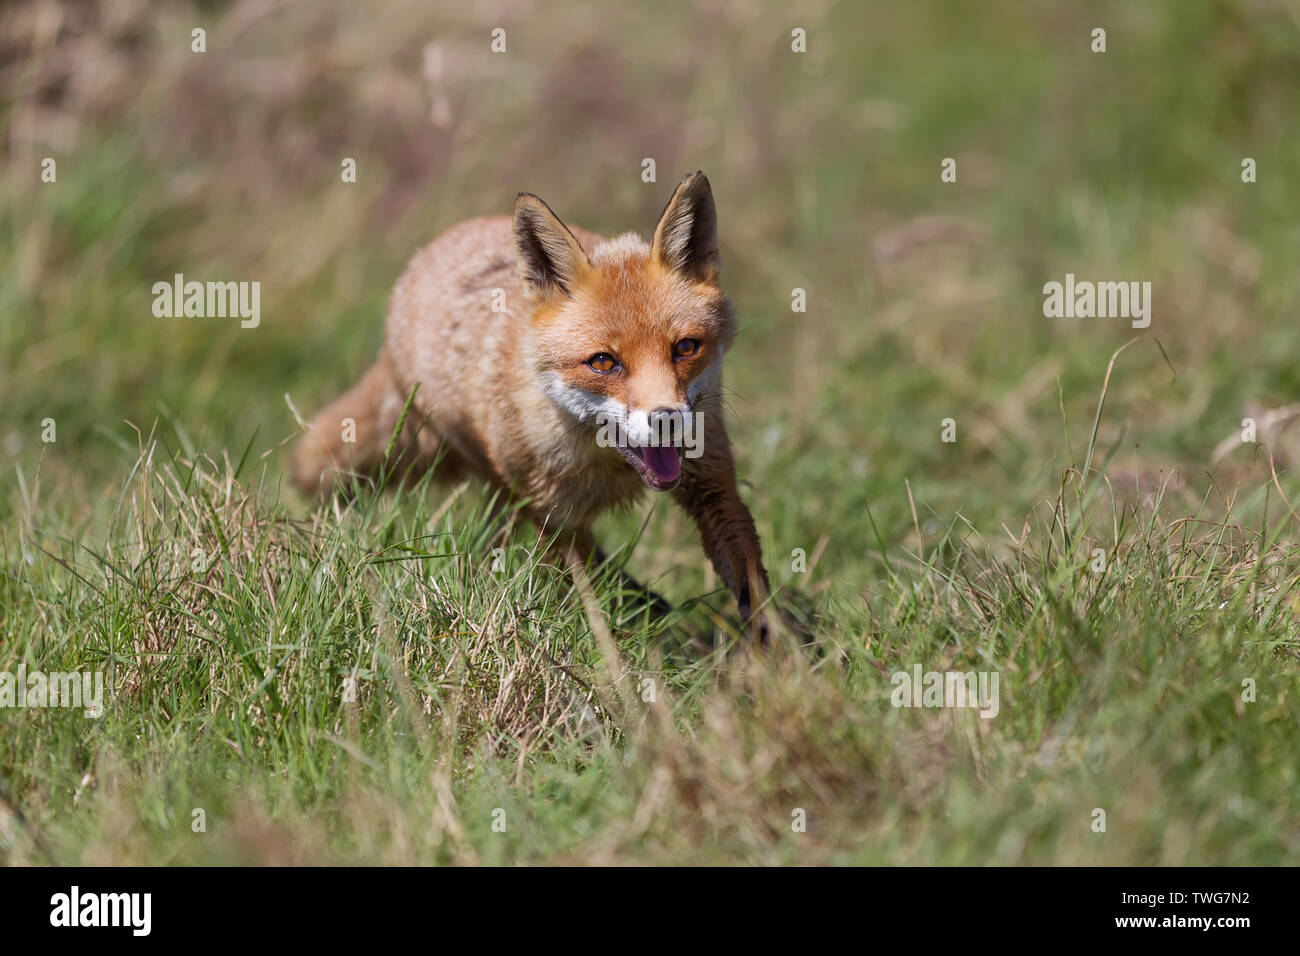 Red fox (Vulpes vulpes) running across a grassy field, Devon, UK Stock Photo